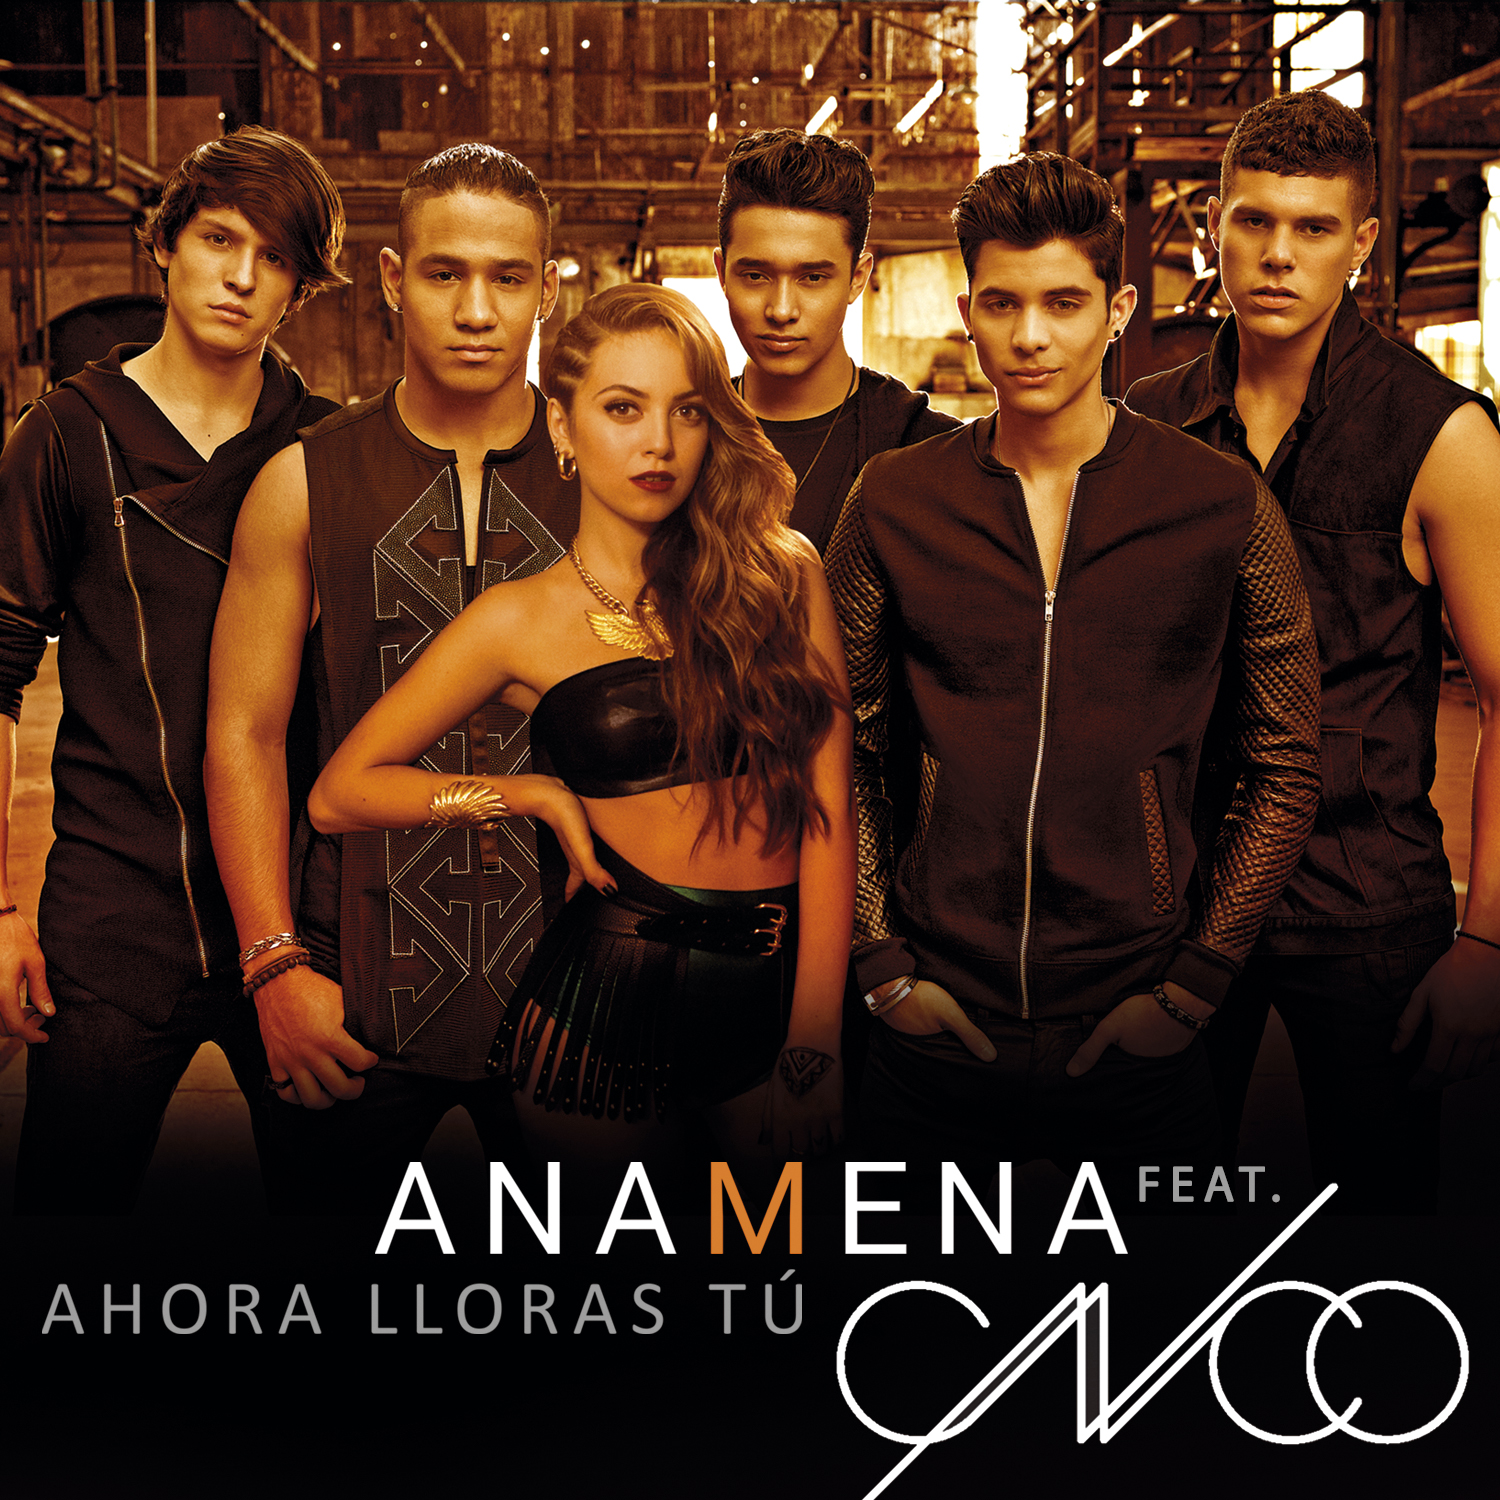 Ana Mena featuring CNCO — Ahora Lloras Tú cover artwork